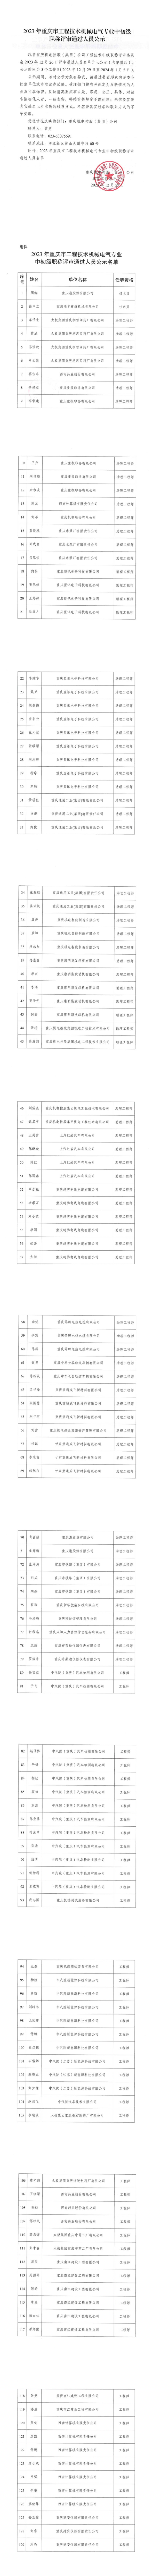 2023年重庆市工程技术机械电气专业中初级职称评审通过人员公示_00.jpg